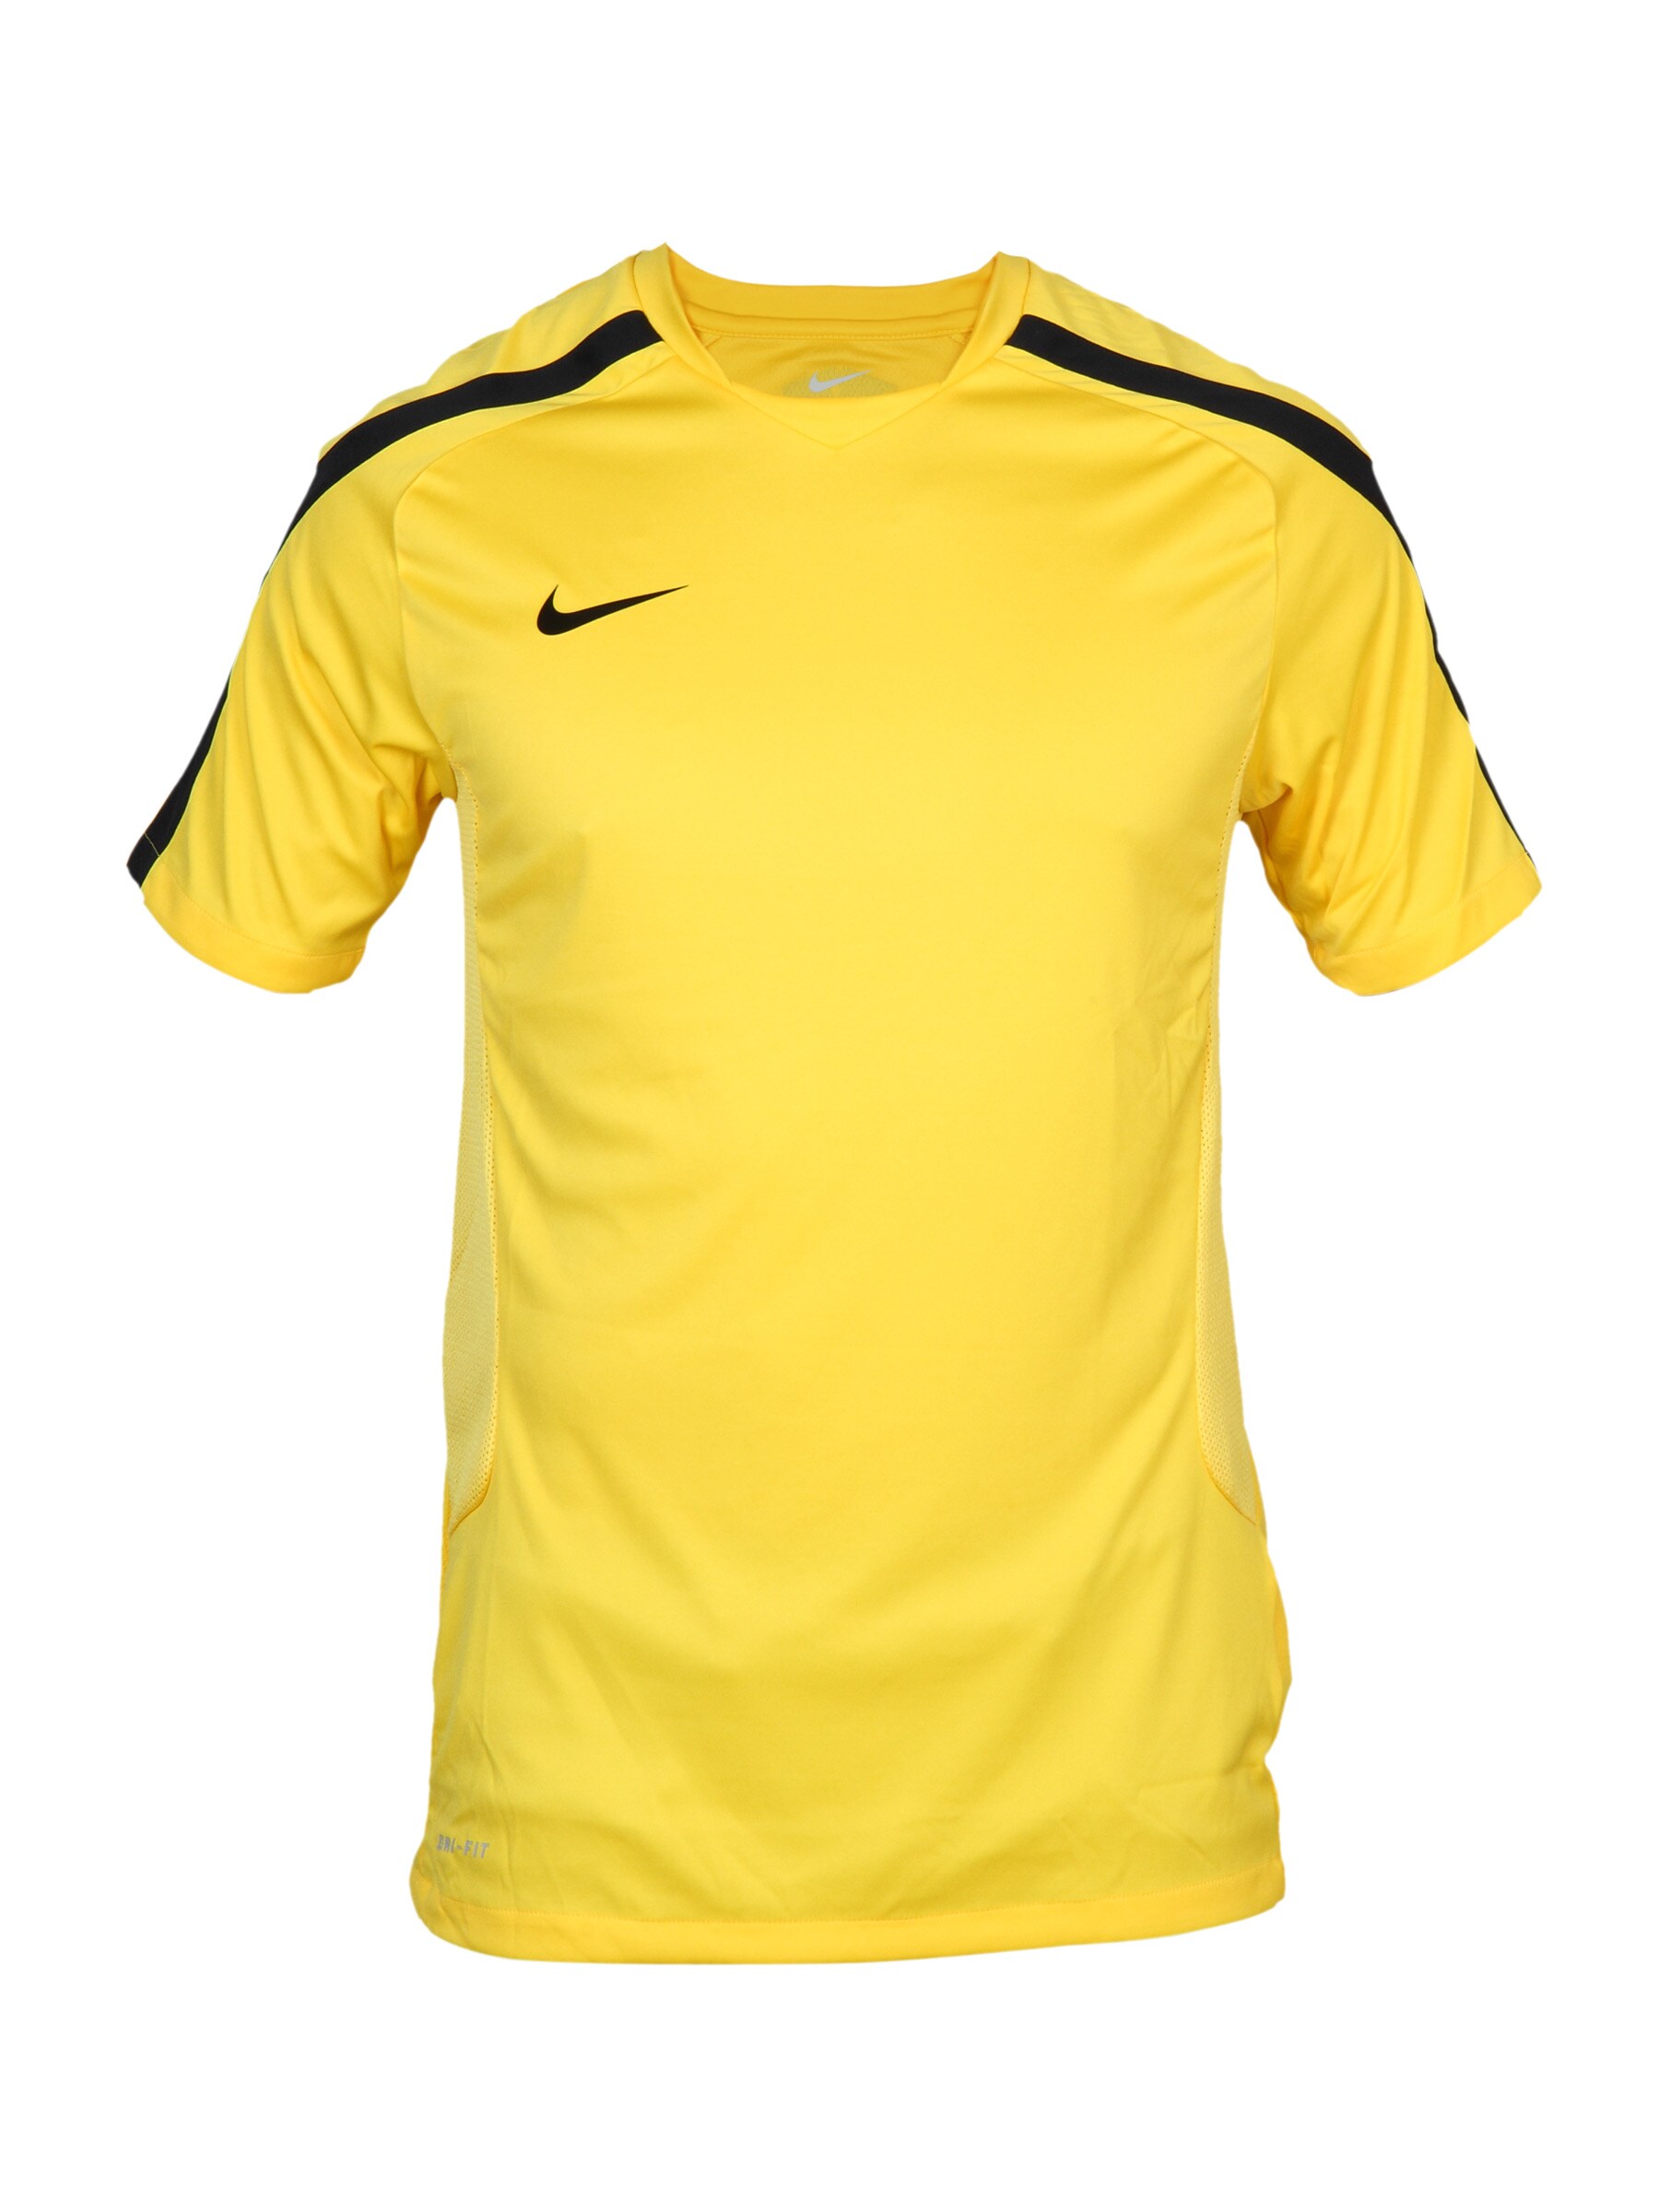 Nike Men's Ss Training Yellow T-shirt